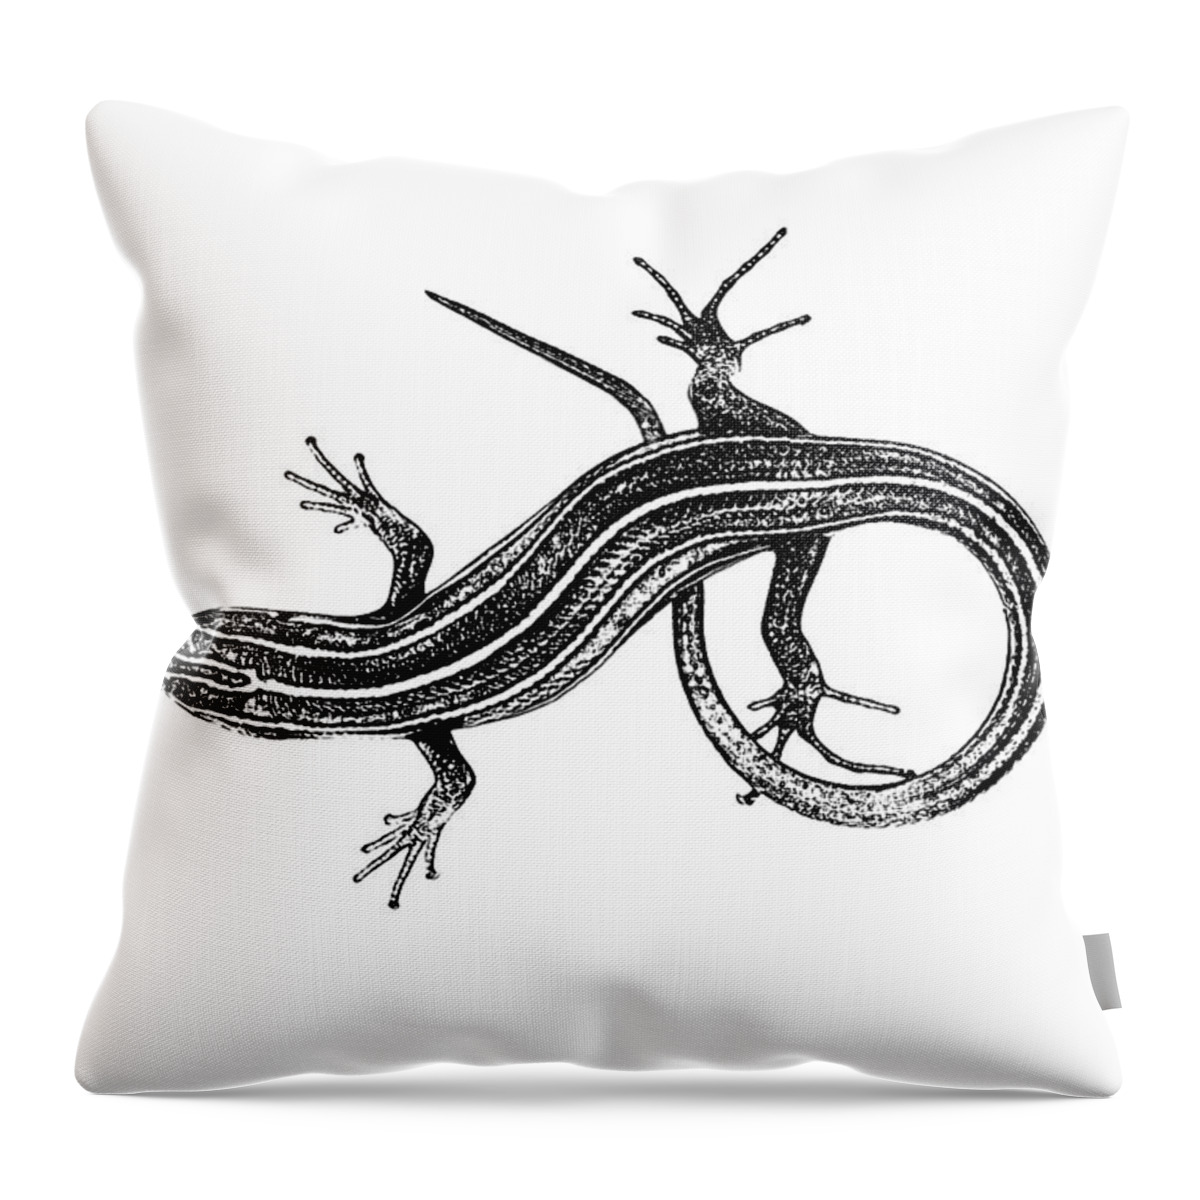 Lizard Throw Pillow featuring the digital art Lizard Drawing by Morgan Carter